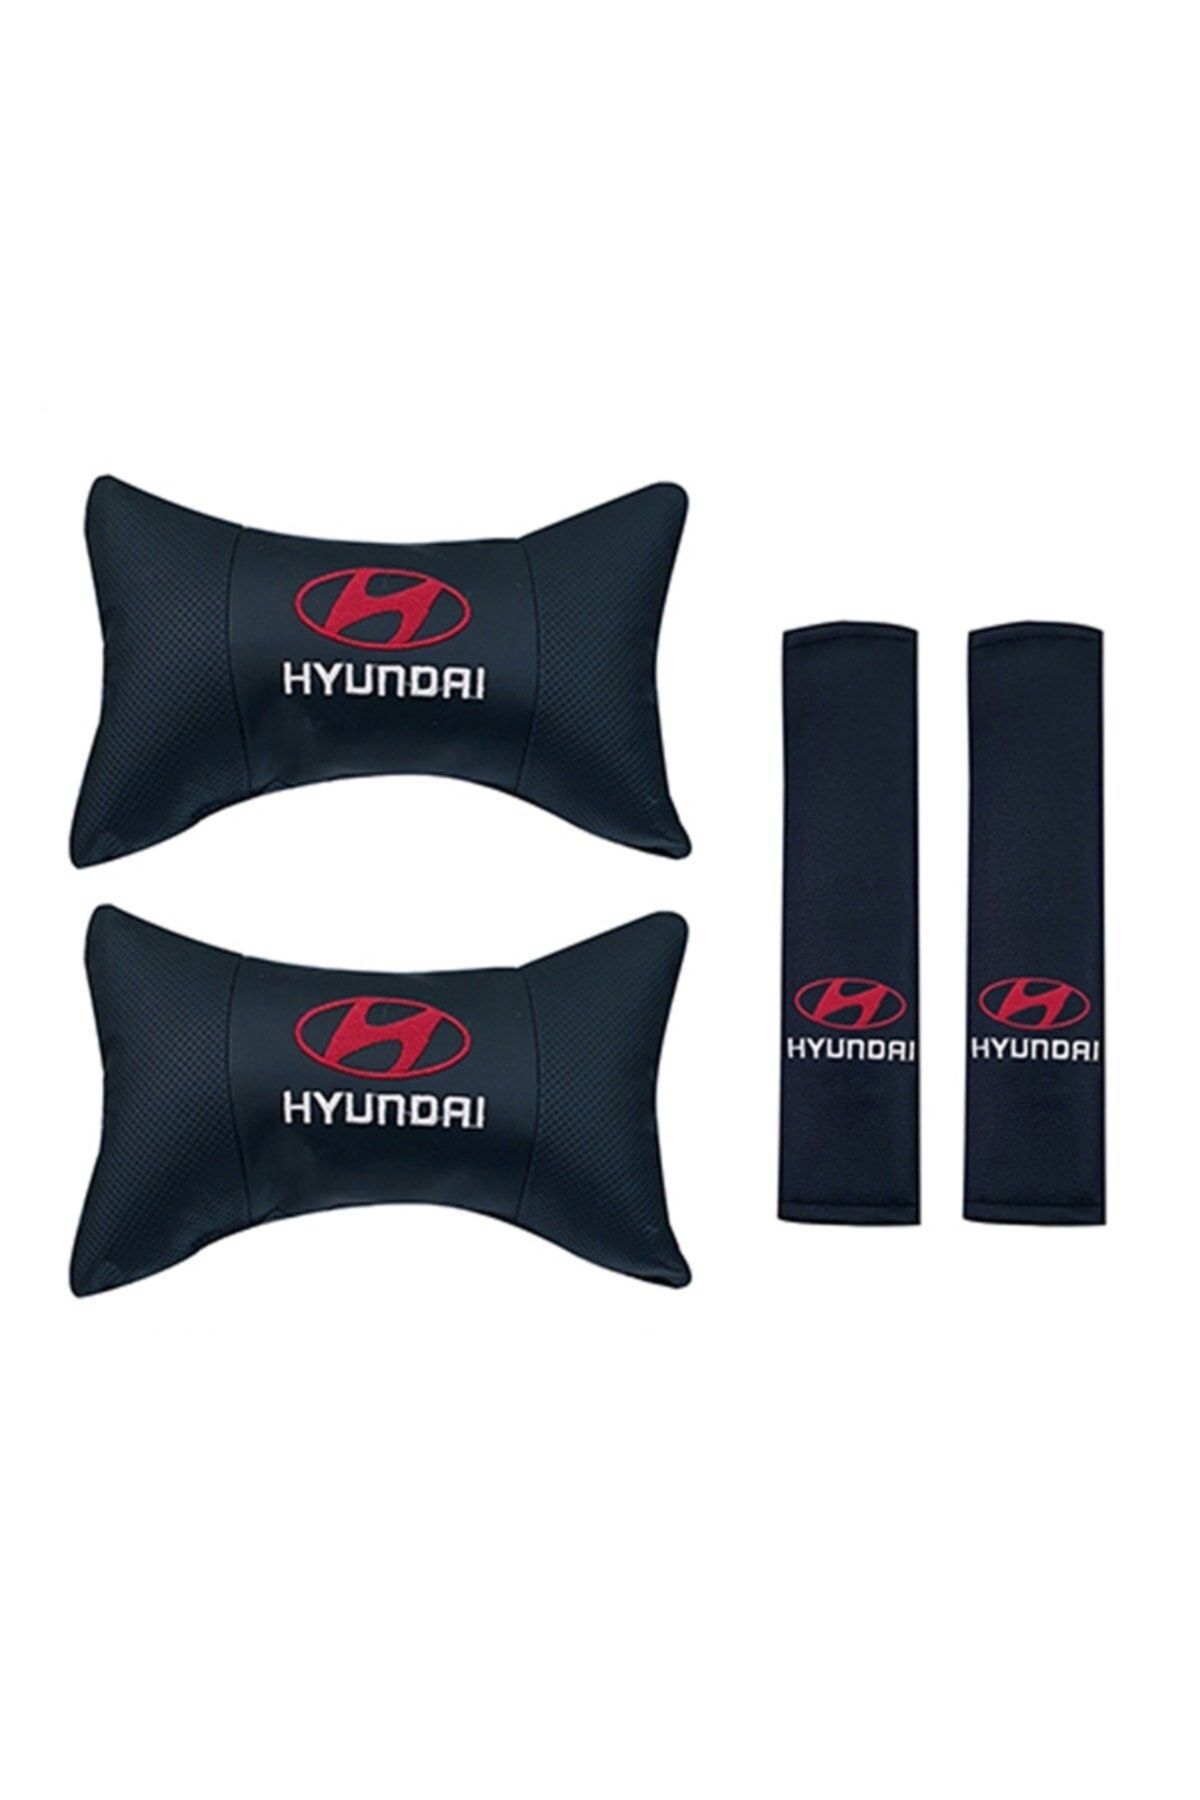 Hyundai Kırmızı beyaz Deri Yastık + Kemer Pedi - Konfor Seti 2'li Cma - 746